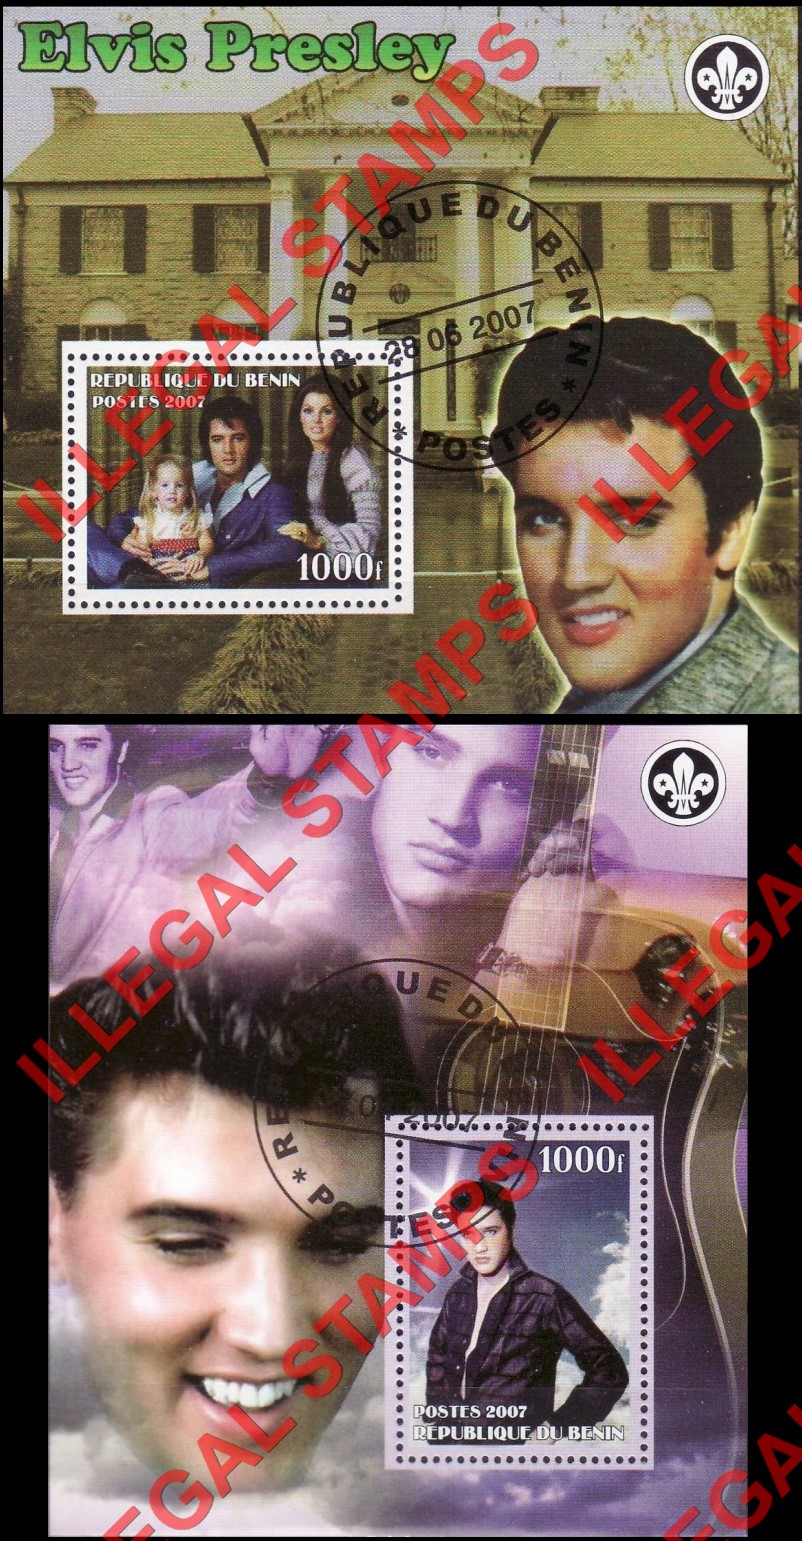 Benin 2007 Elvis Presley Illegal Stamp Souvenir Sheets of 1